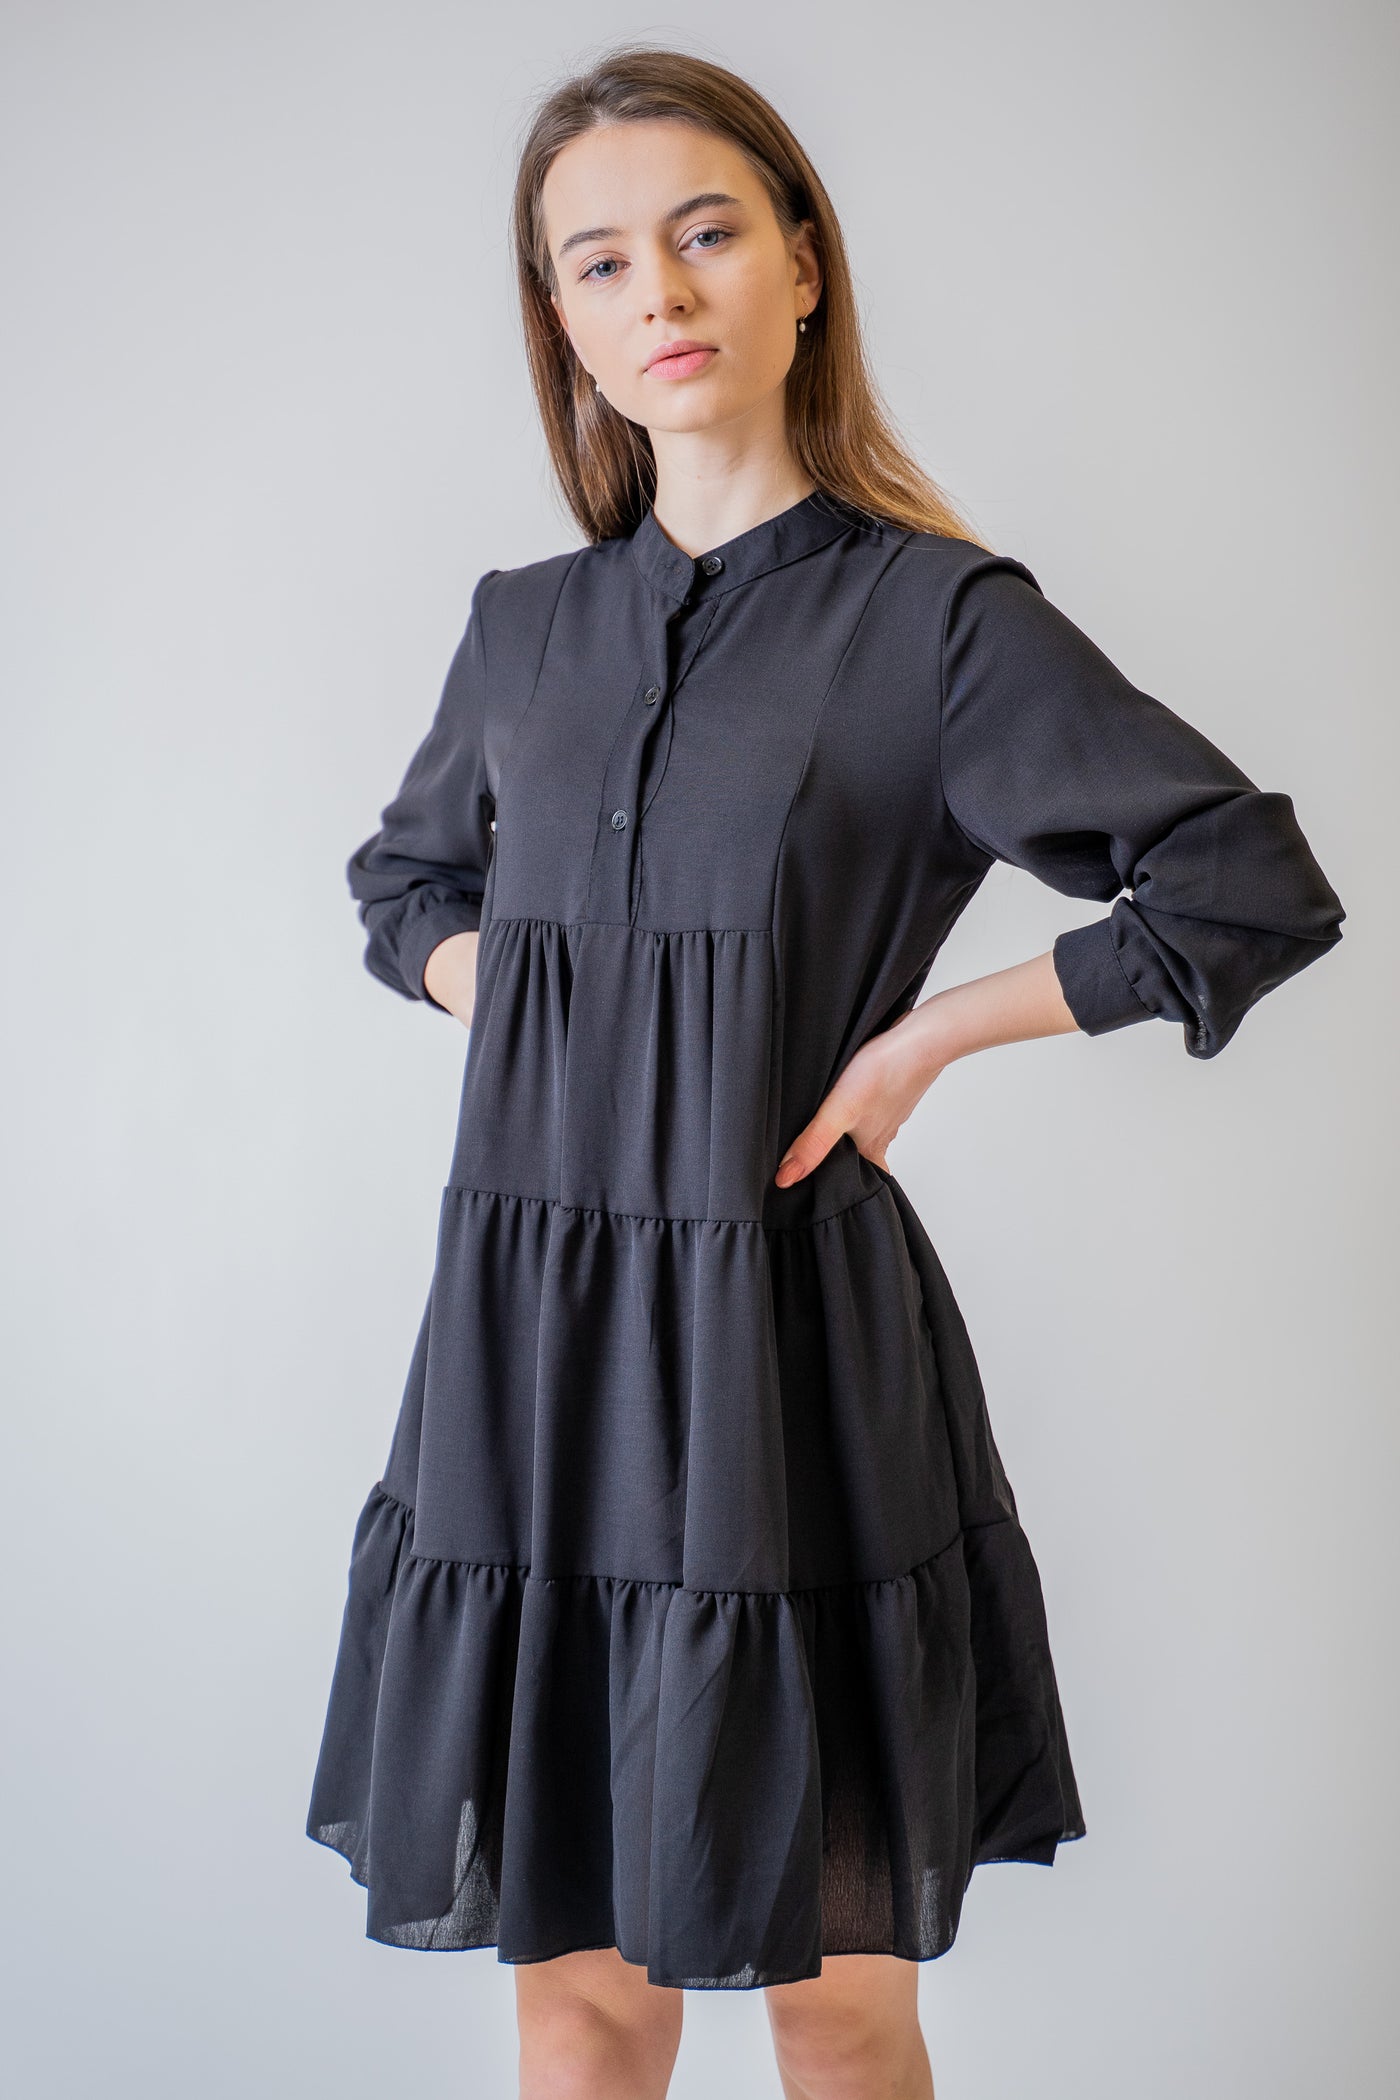 Čierne košeľové šaty s volánmi - UNI - Šaty